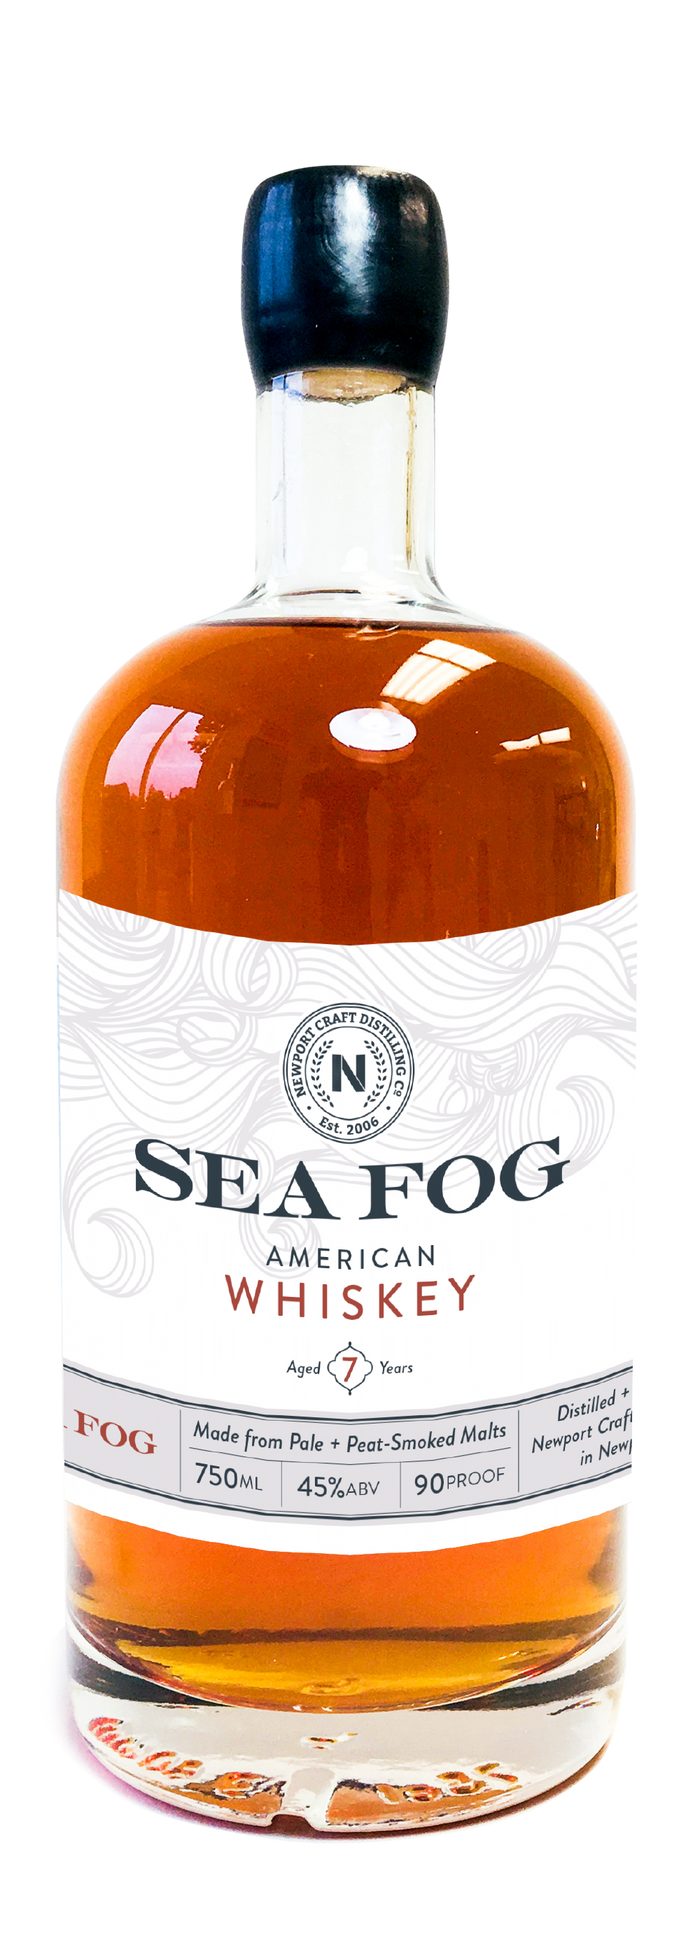 Sea Fog 7 Year Old American Whiskey